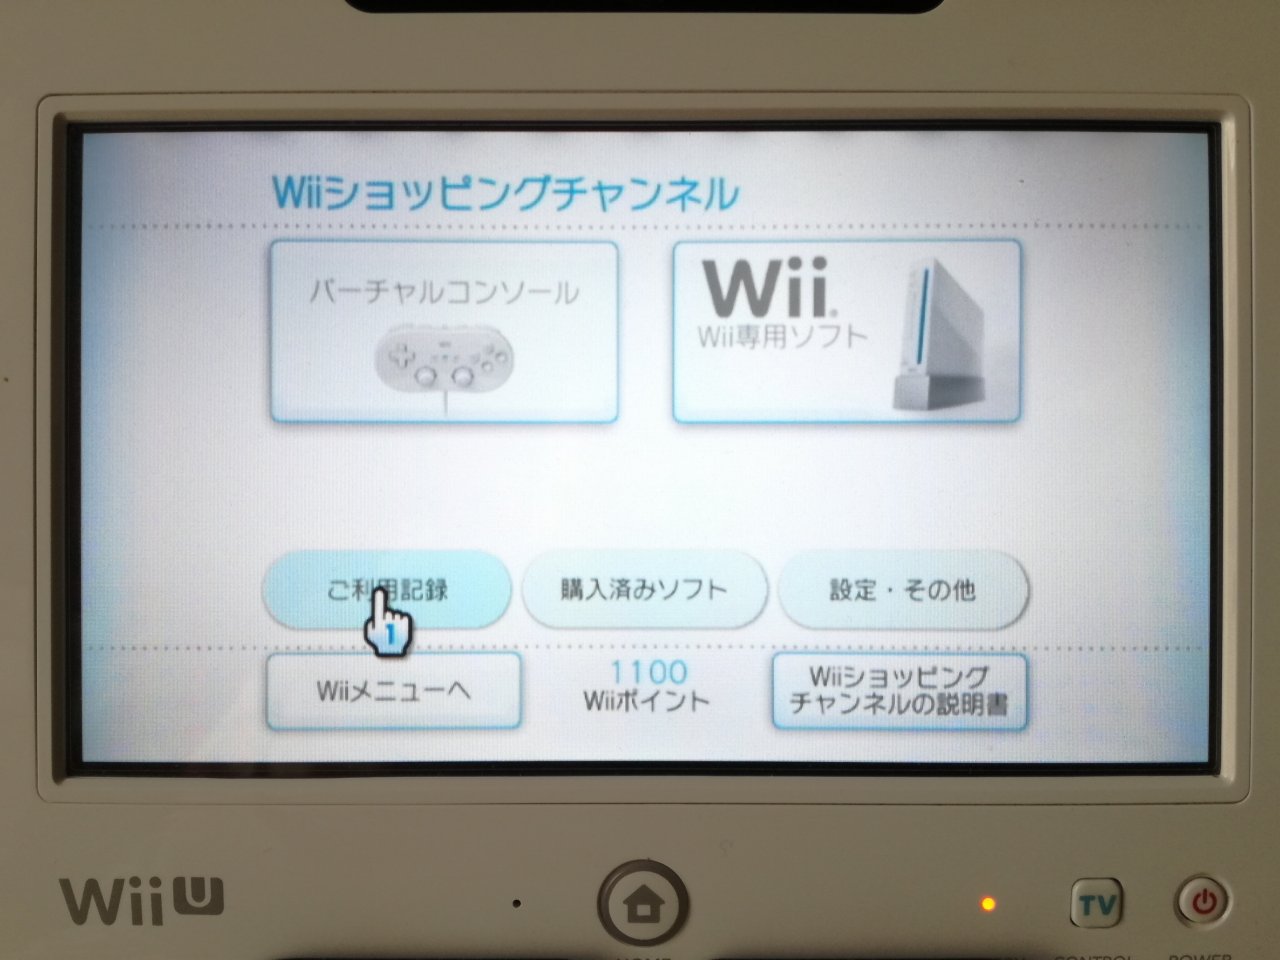 空想どうでしょう ブログ Wiiショッピングチャンネルの残高払い戻し